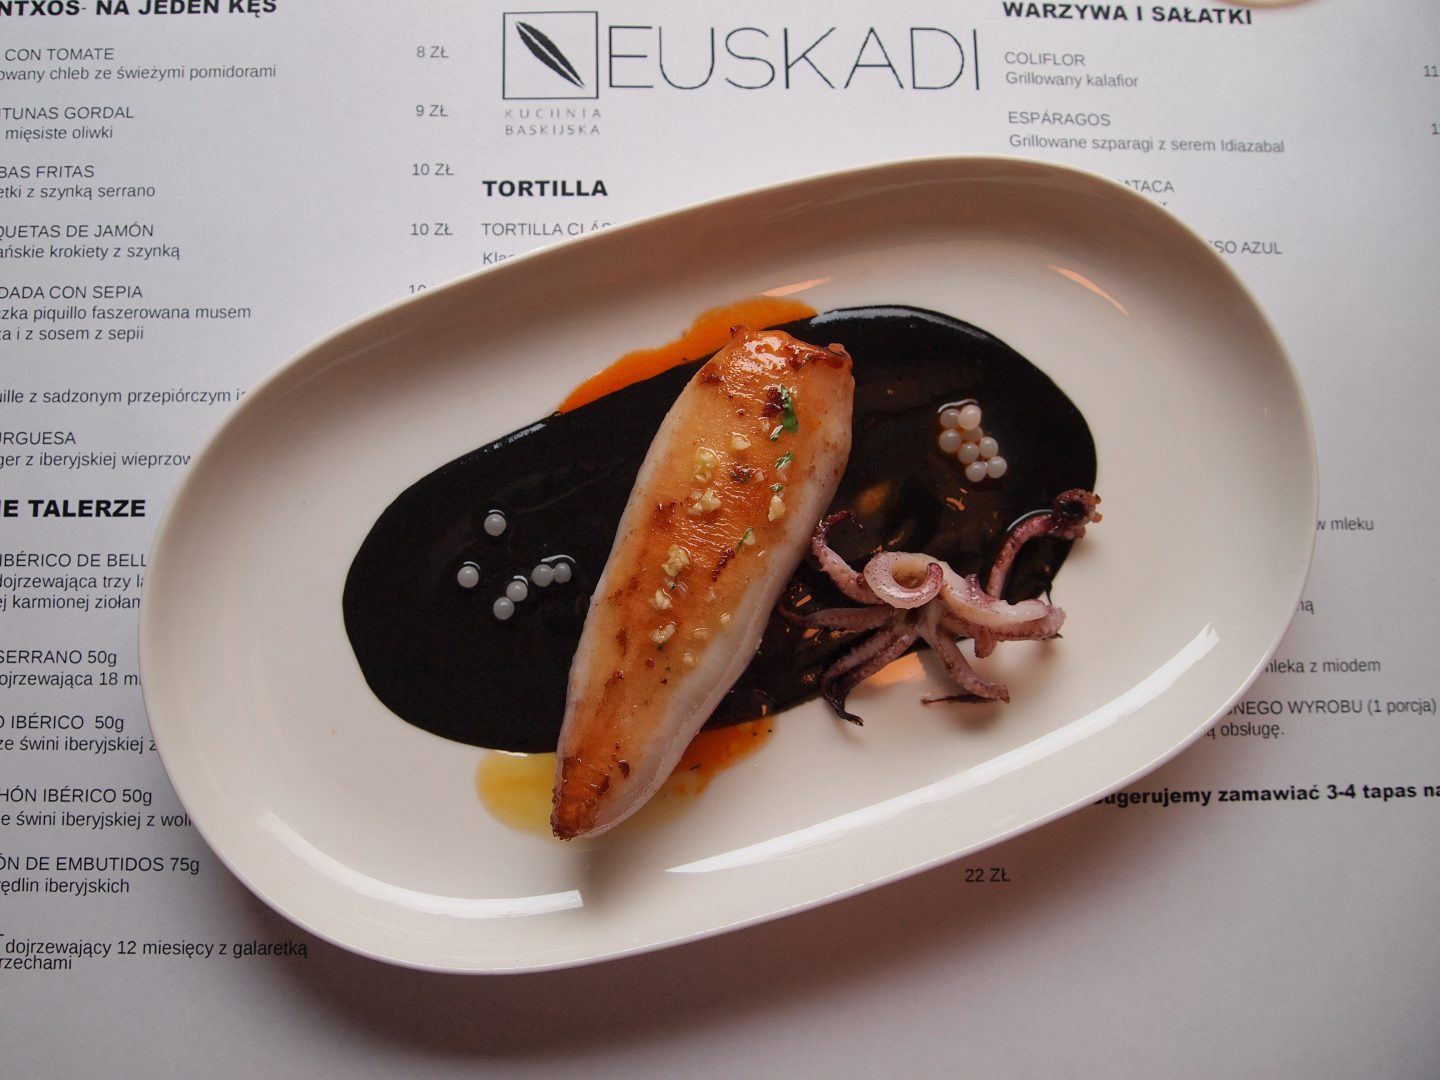 Euskadi, Krakow, kalmar nadziewanym chorizo z kawiorem slimaka i sosem z sepii